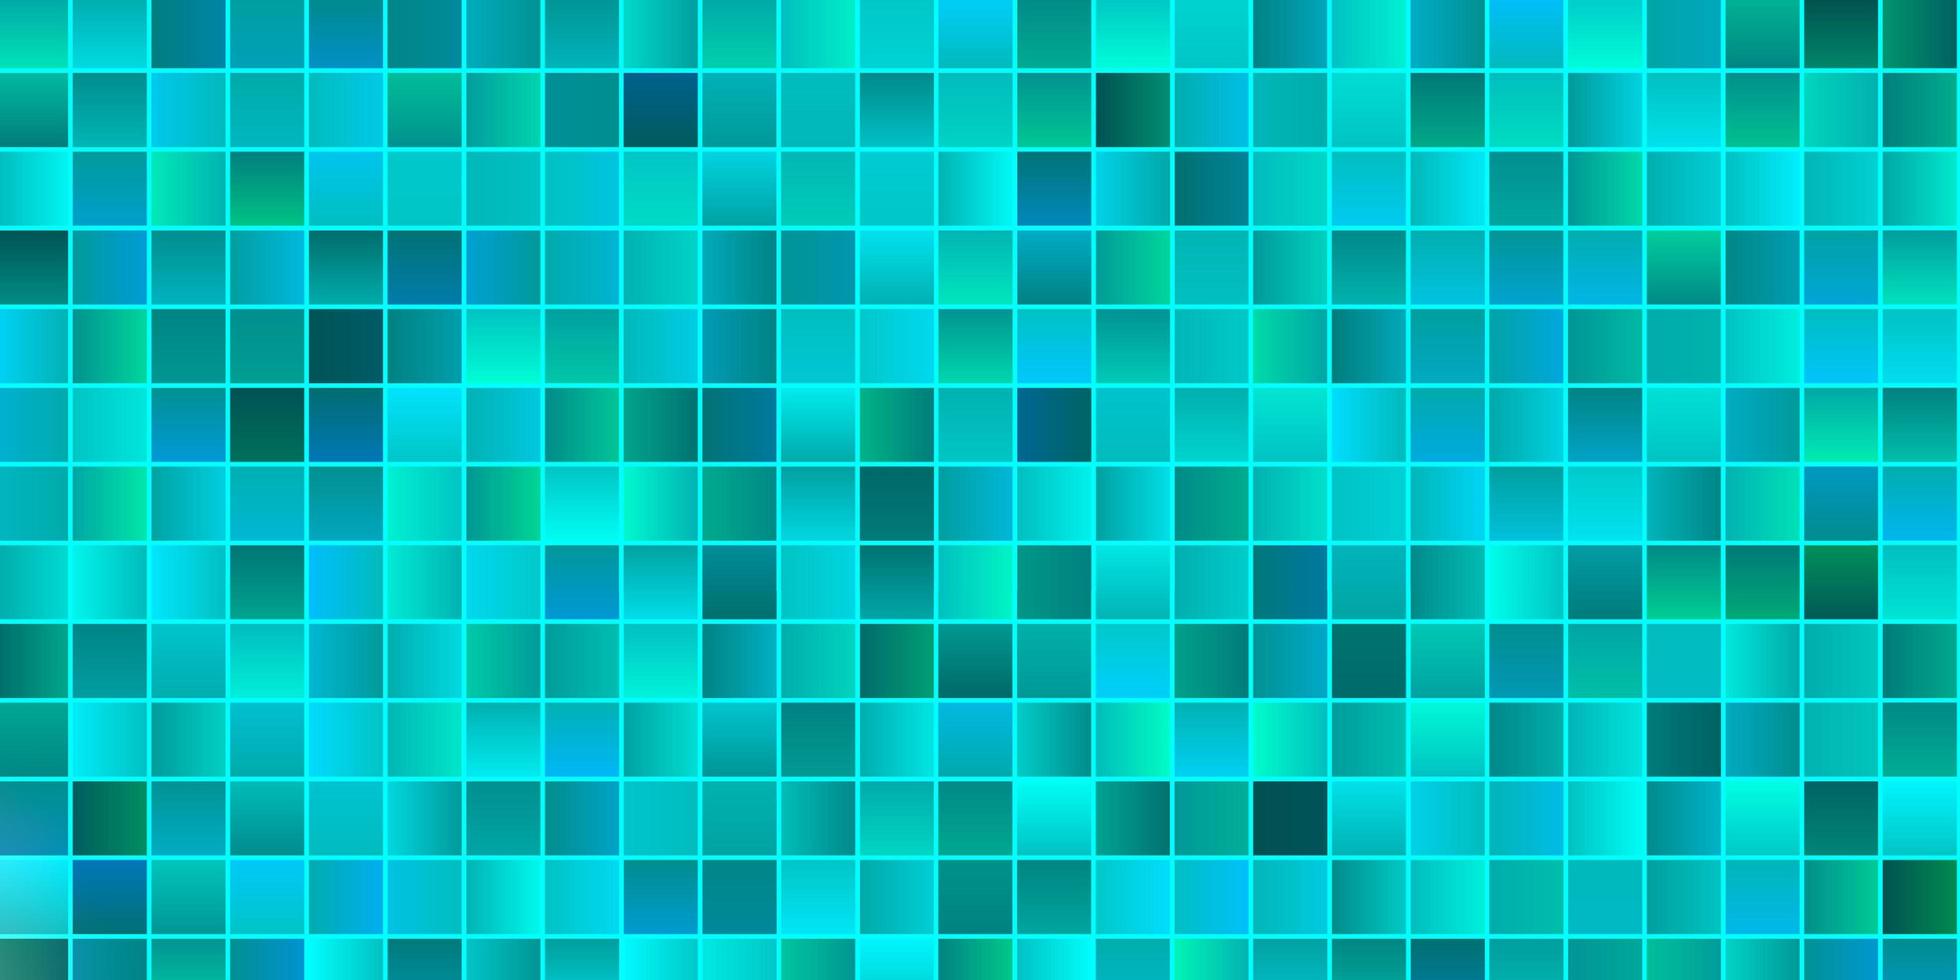 diseño de vector azul claro, verde con líneas, rectángulos.